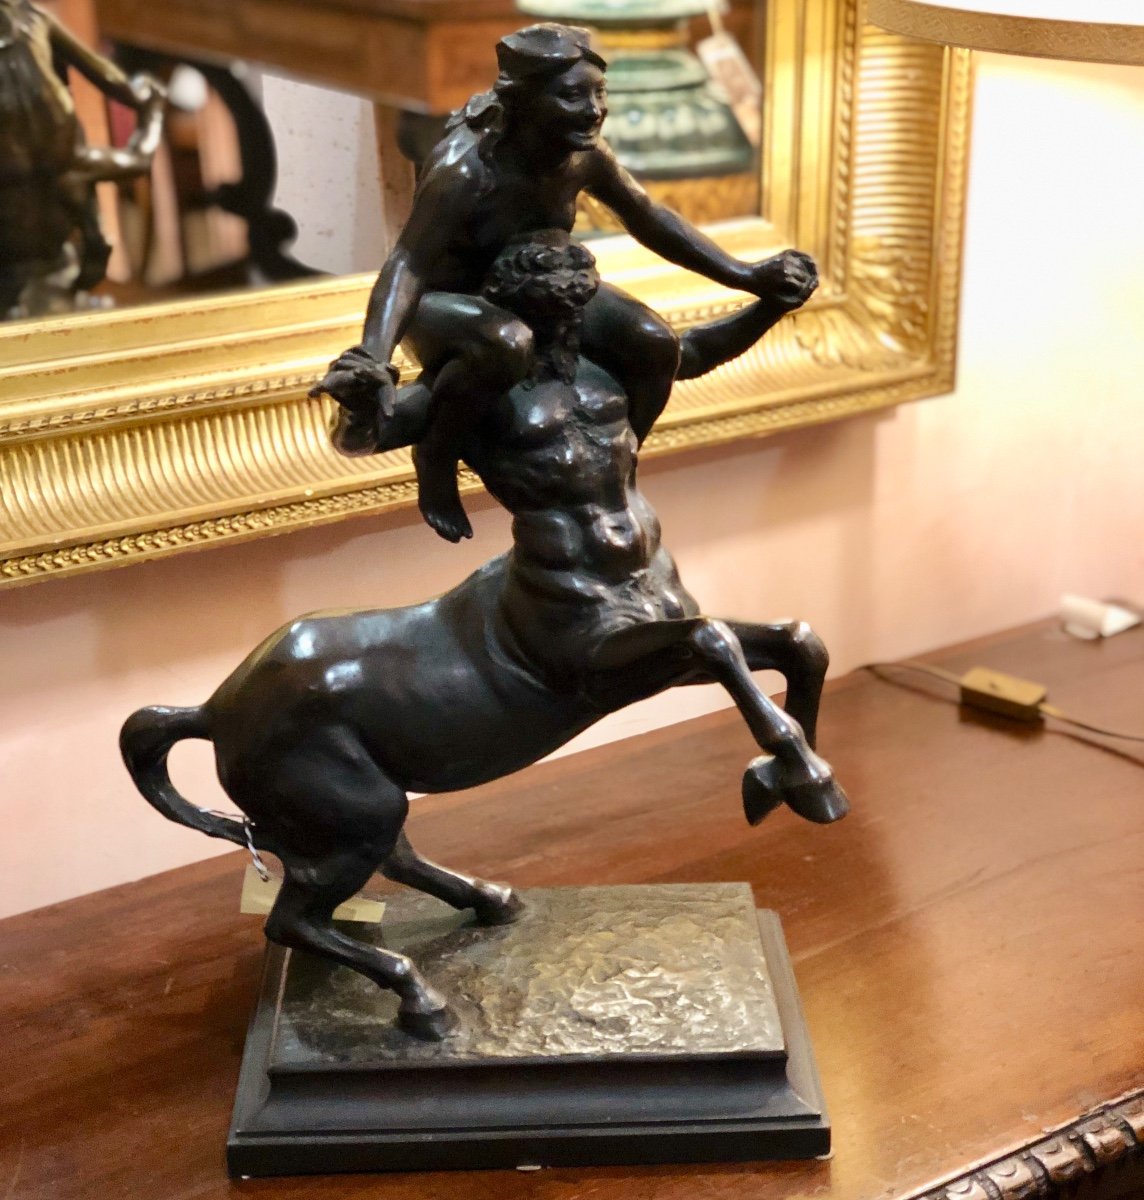 Scultura mitologica in bronzo. “Il centauro” firmato da Augusto Rivalta 1837-1925.